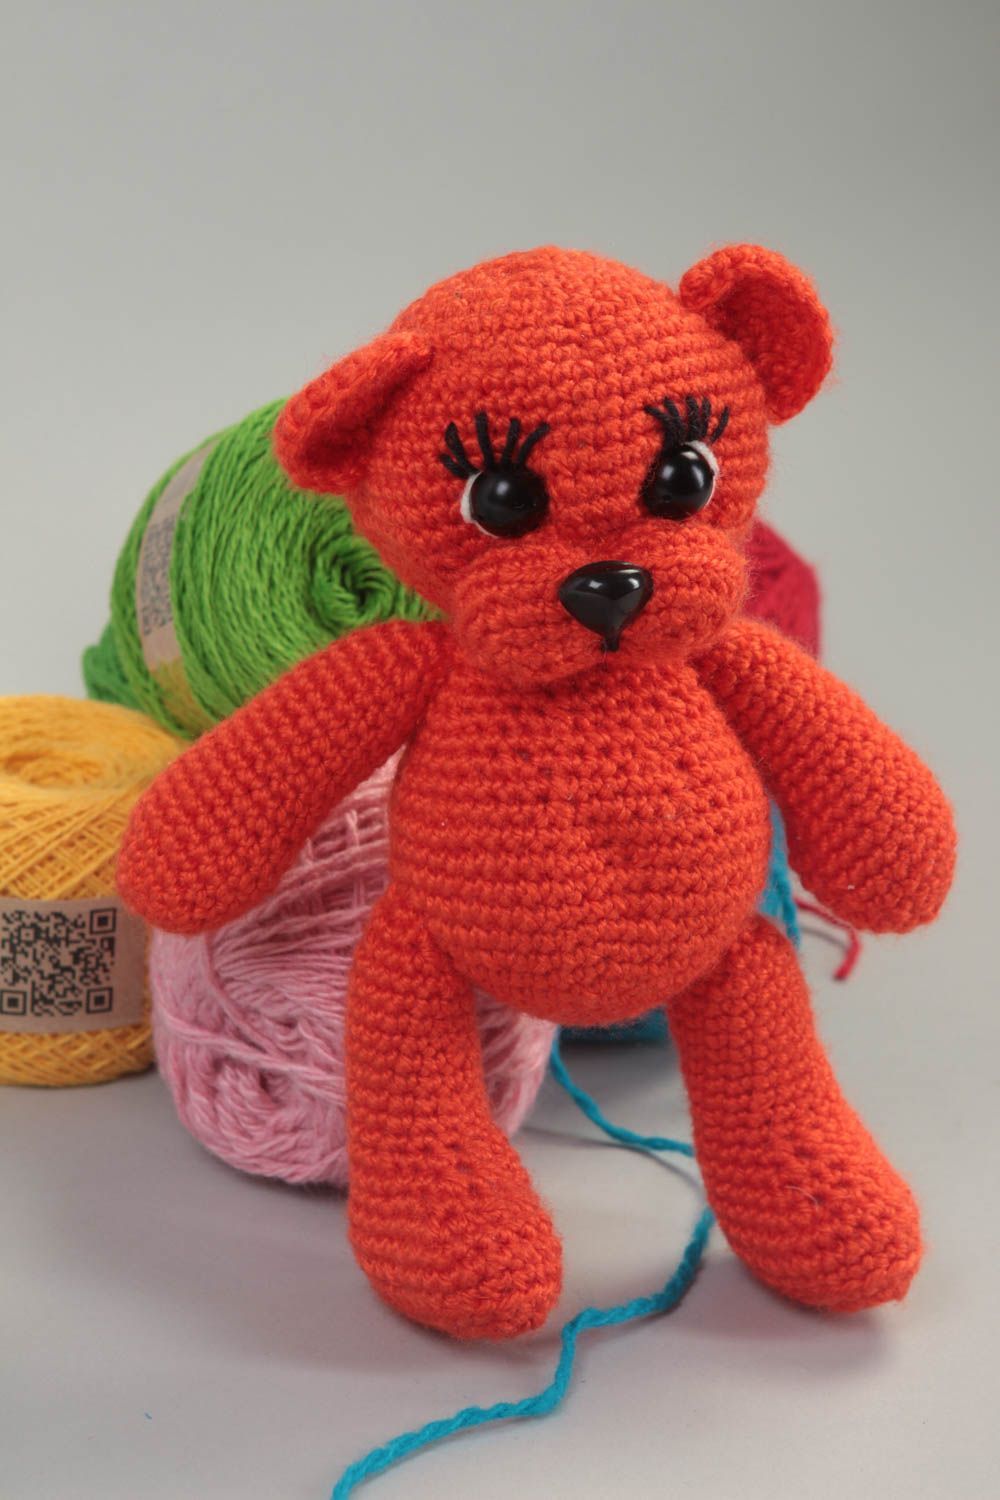 Handmade Kuscheltier Bär weiches Kuscheltier Geschenk für Kinder gehäkelt rot foto 1